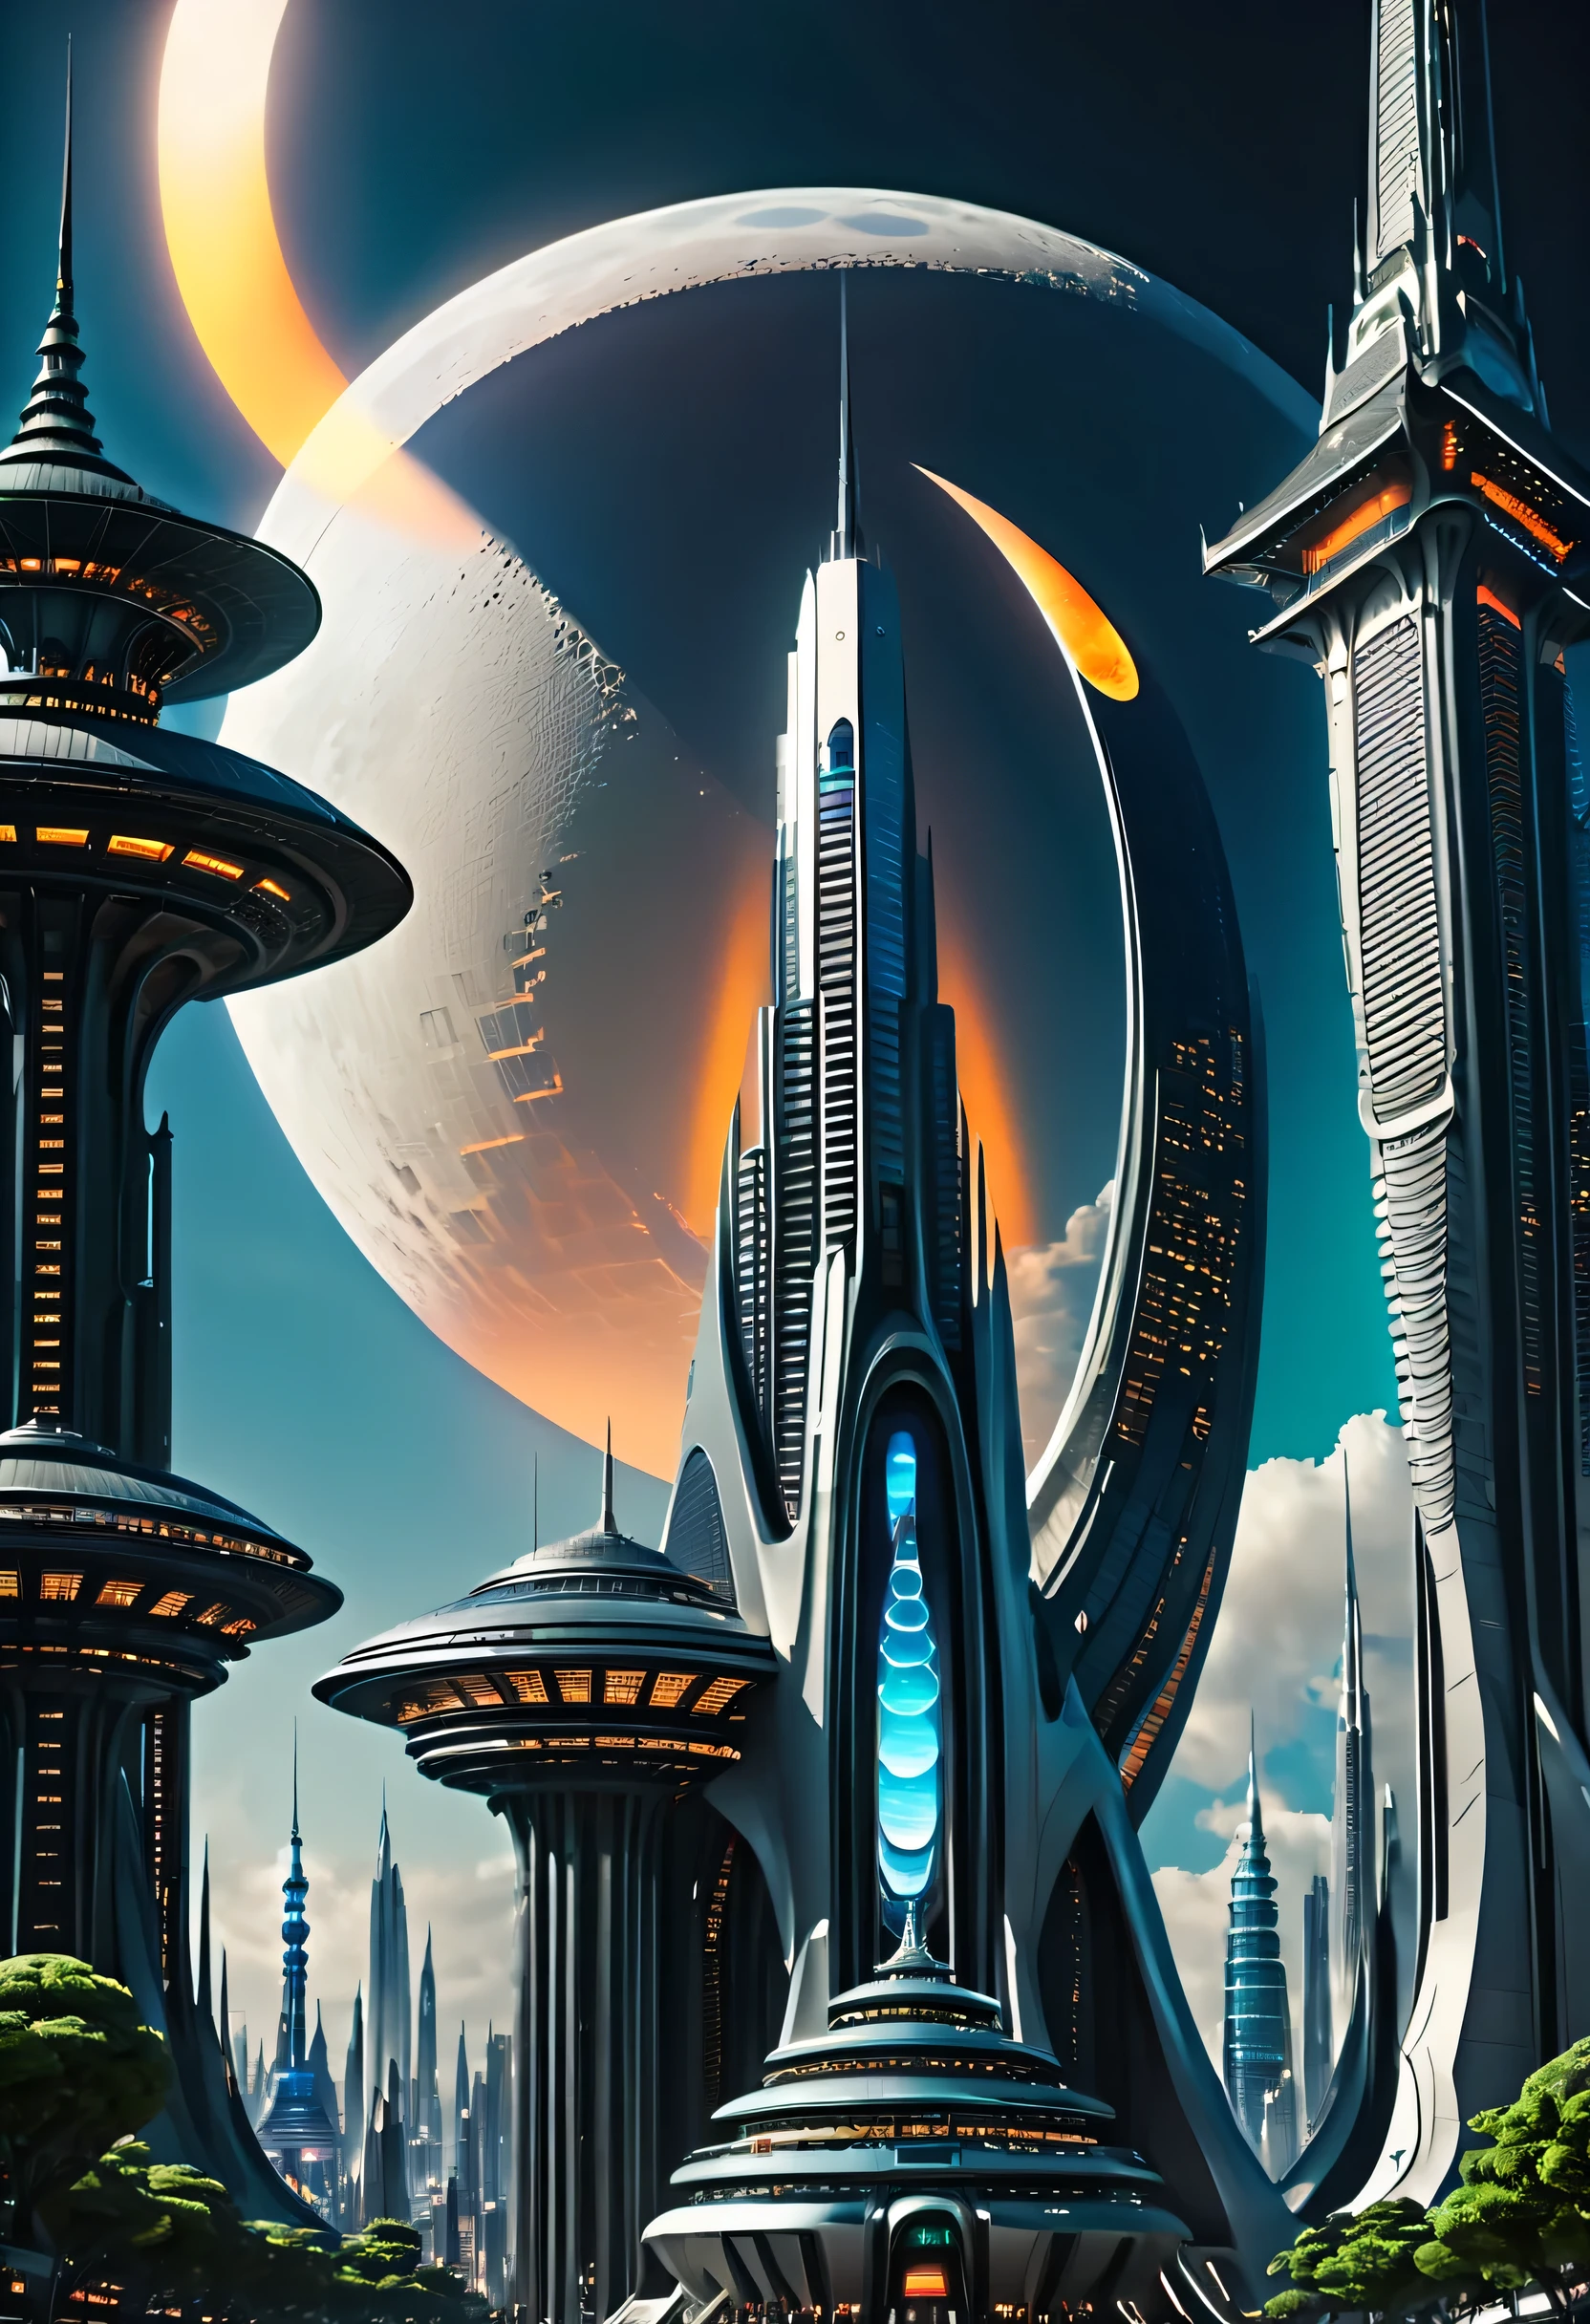 未来城市，未来建筑，天空中的月亮, 巨大的未来主义寺庙城市, beautiful 未来之城, 未来主义背景, 未来太空港, 未来派山谷, 超凡脱俗的未来城市, 未来派宫殿, 在幻想科幻城市, 外星城市, 外星未来城市, 科幻城市, 未来之城, 未来外星城市, 未来乌托邦